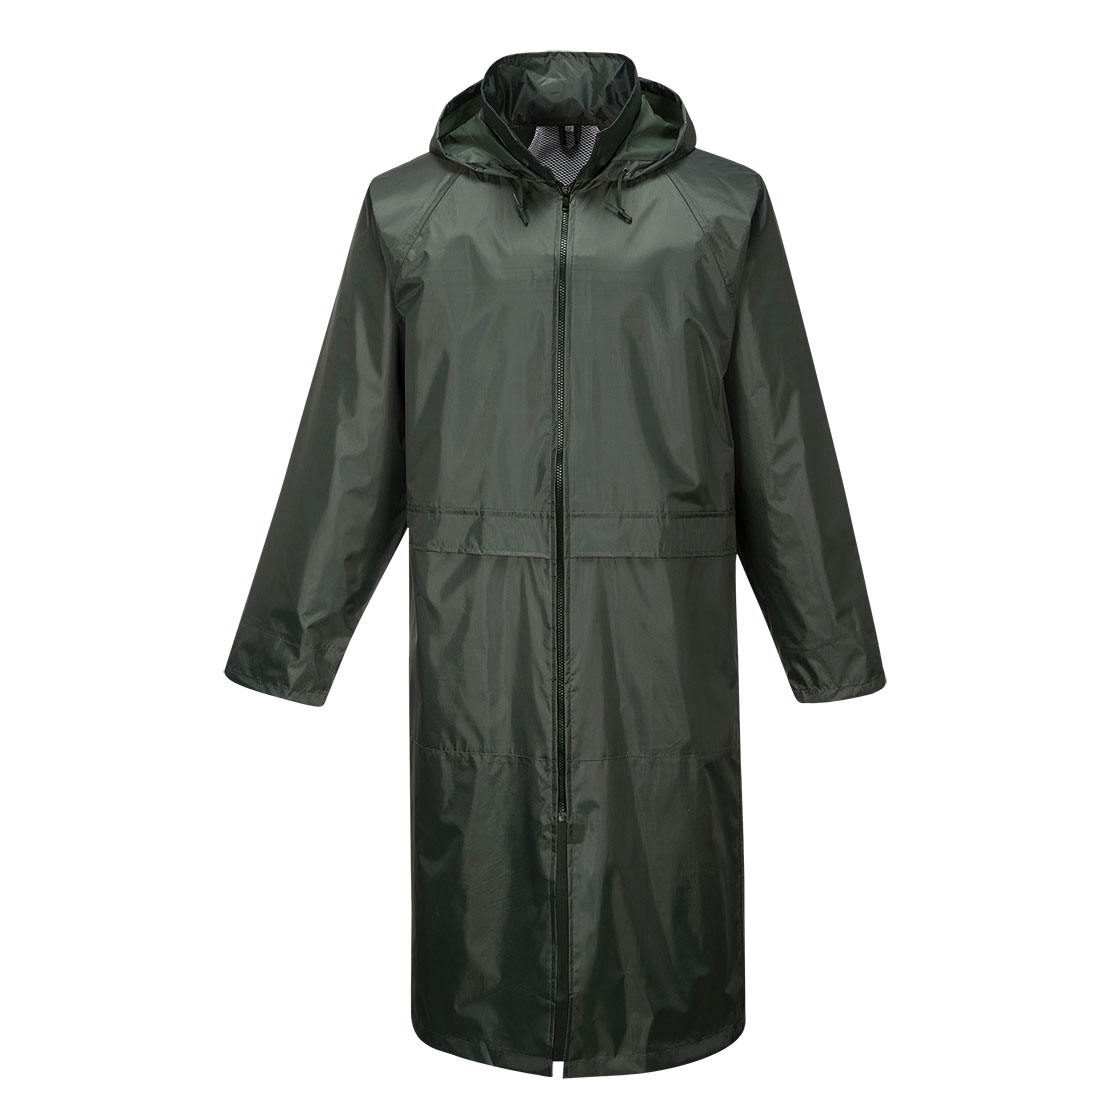 Classic Rain Coat Size L Olive Green